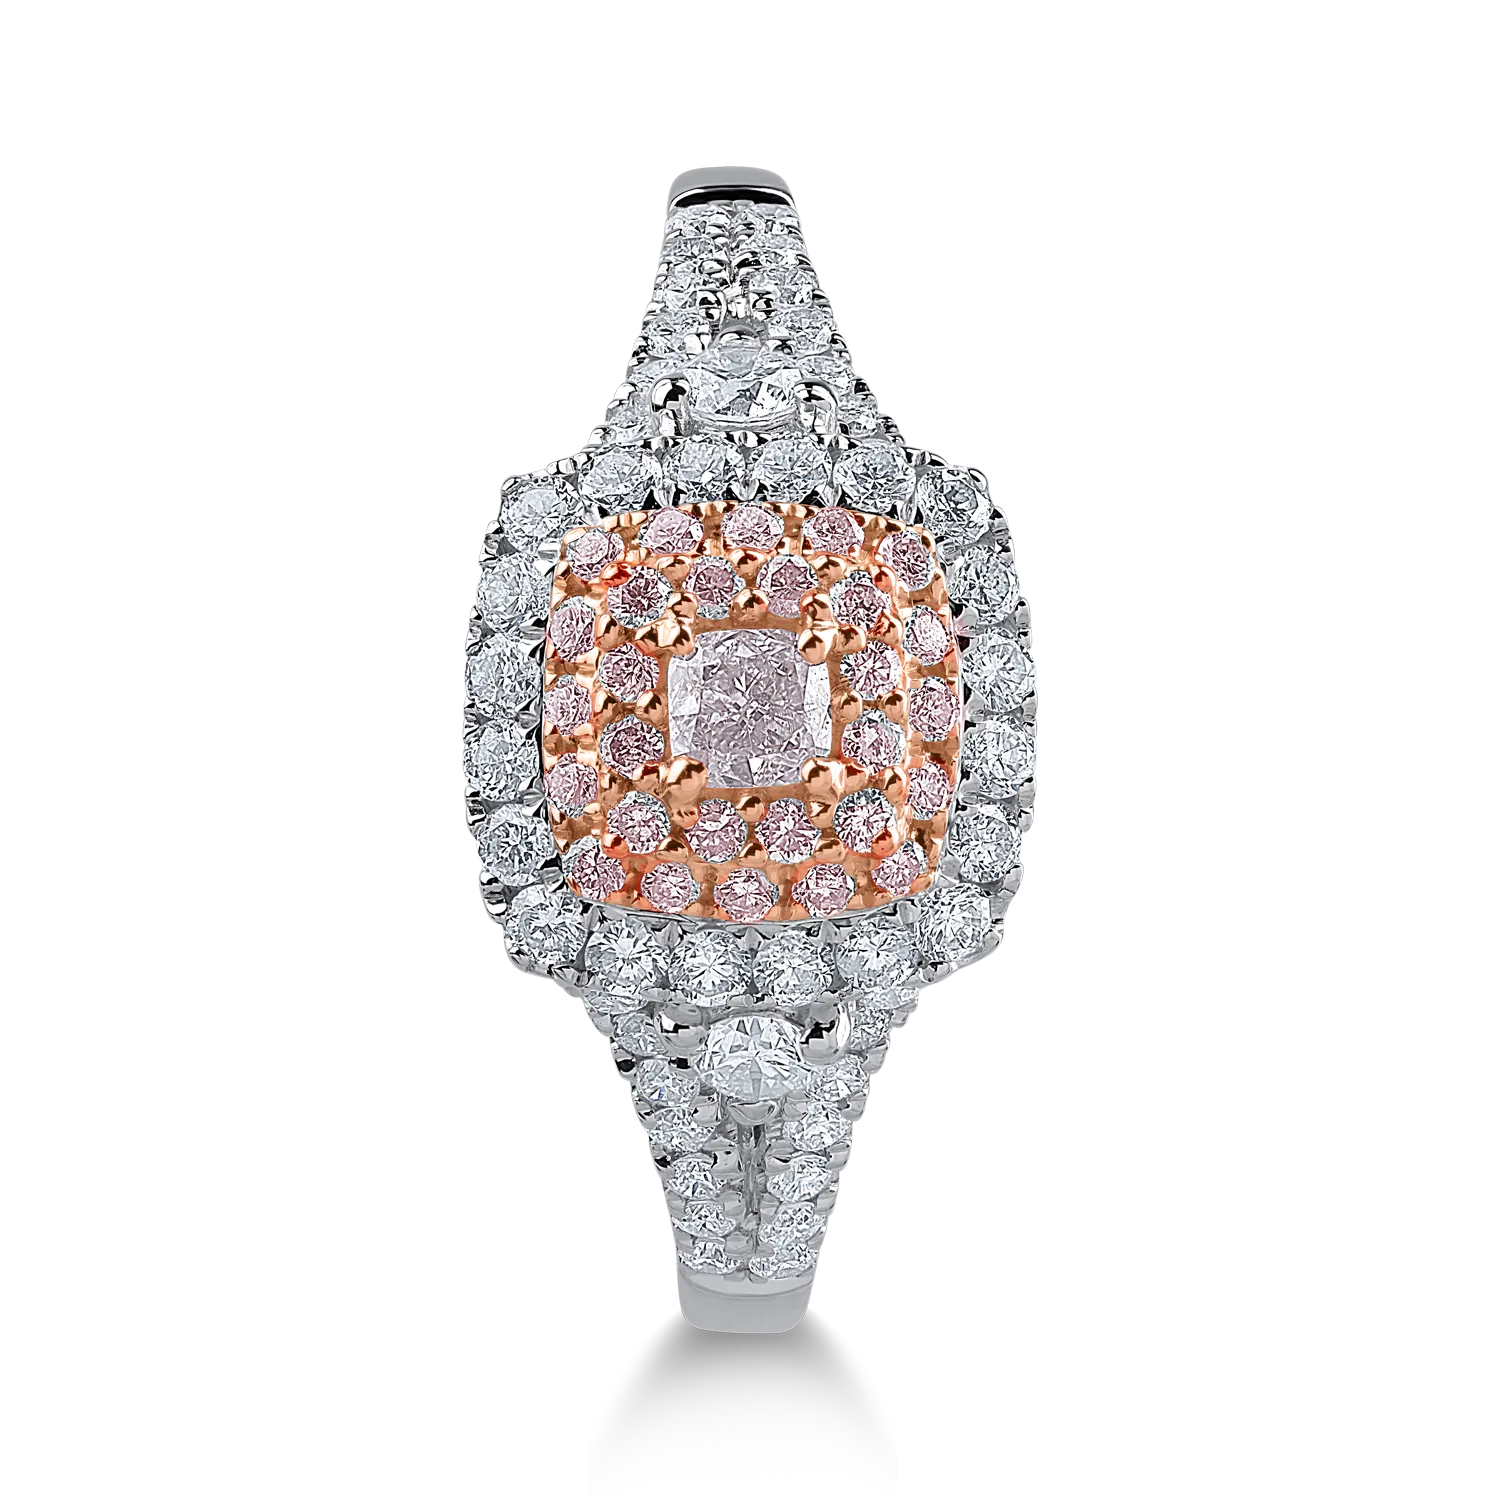 Inel din aur alb-roz cu diamante transparente de 0.51ct si diamante roz de 0.23ct